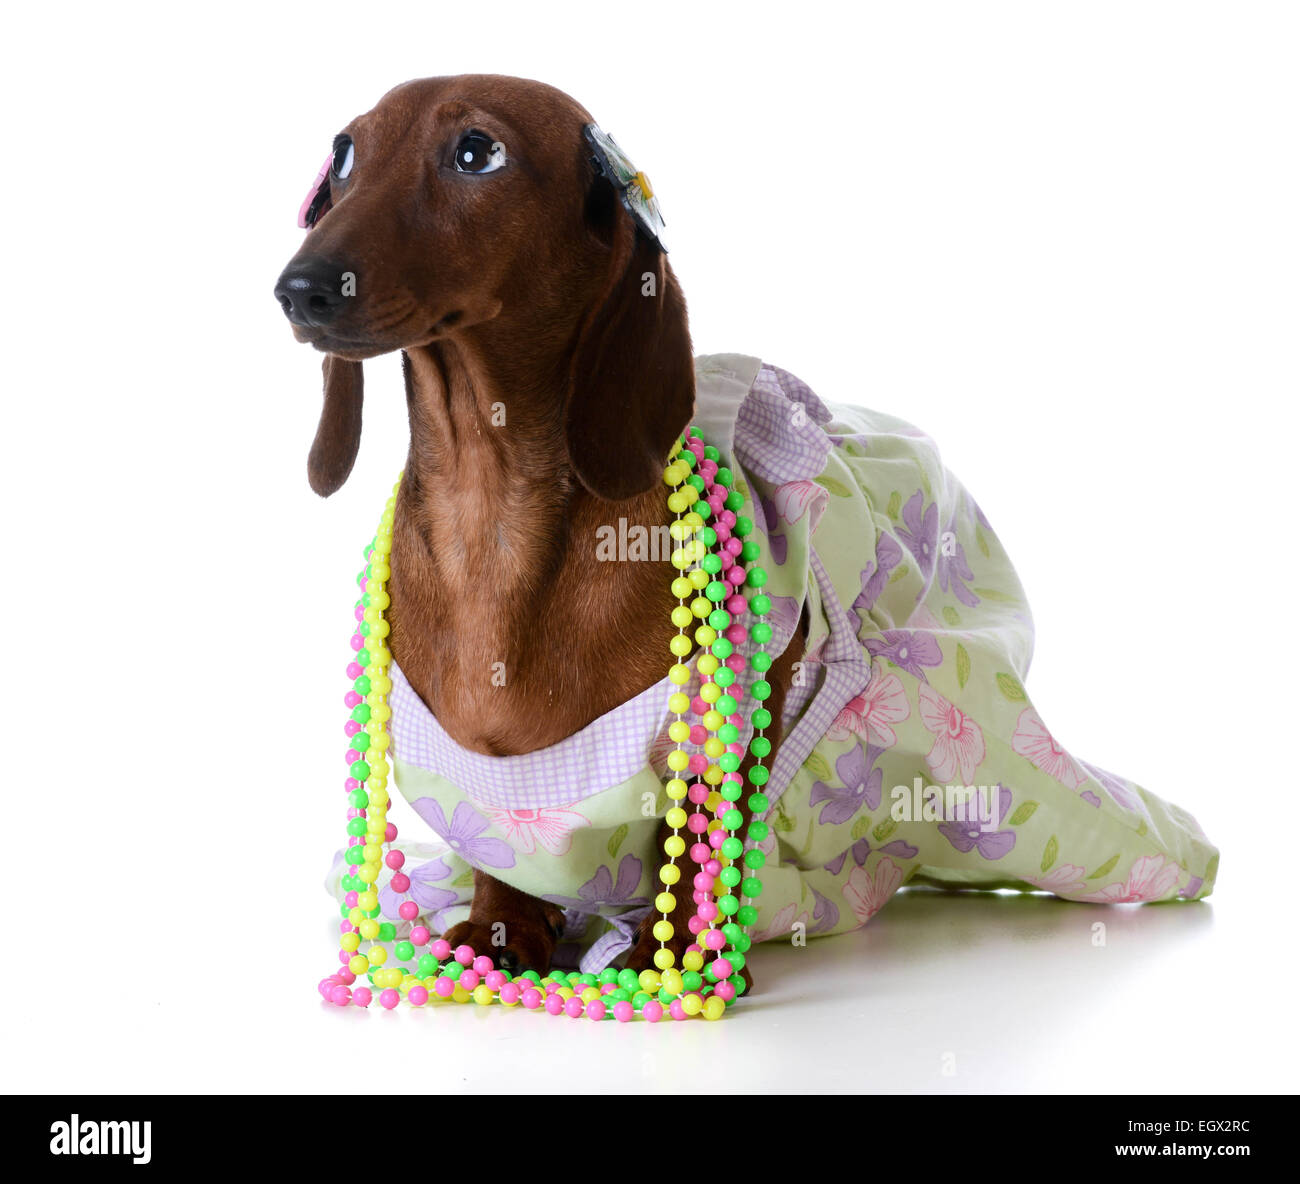 female dog - miniature dachshund wearing  clothing on white background Stock Photo